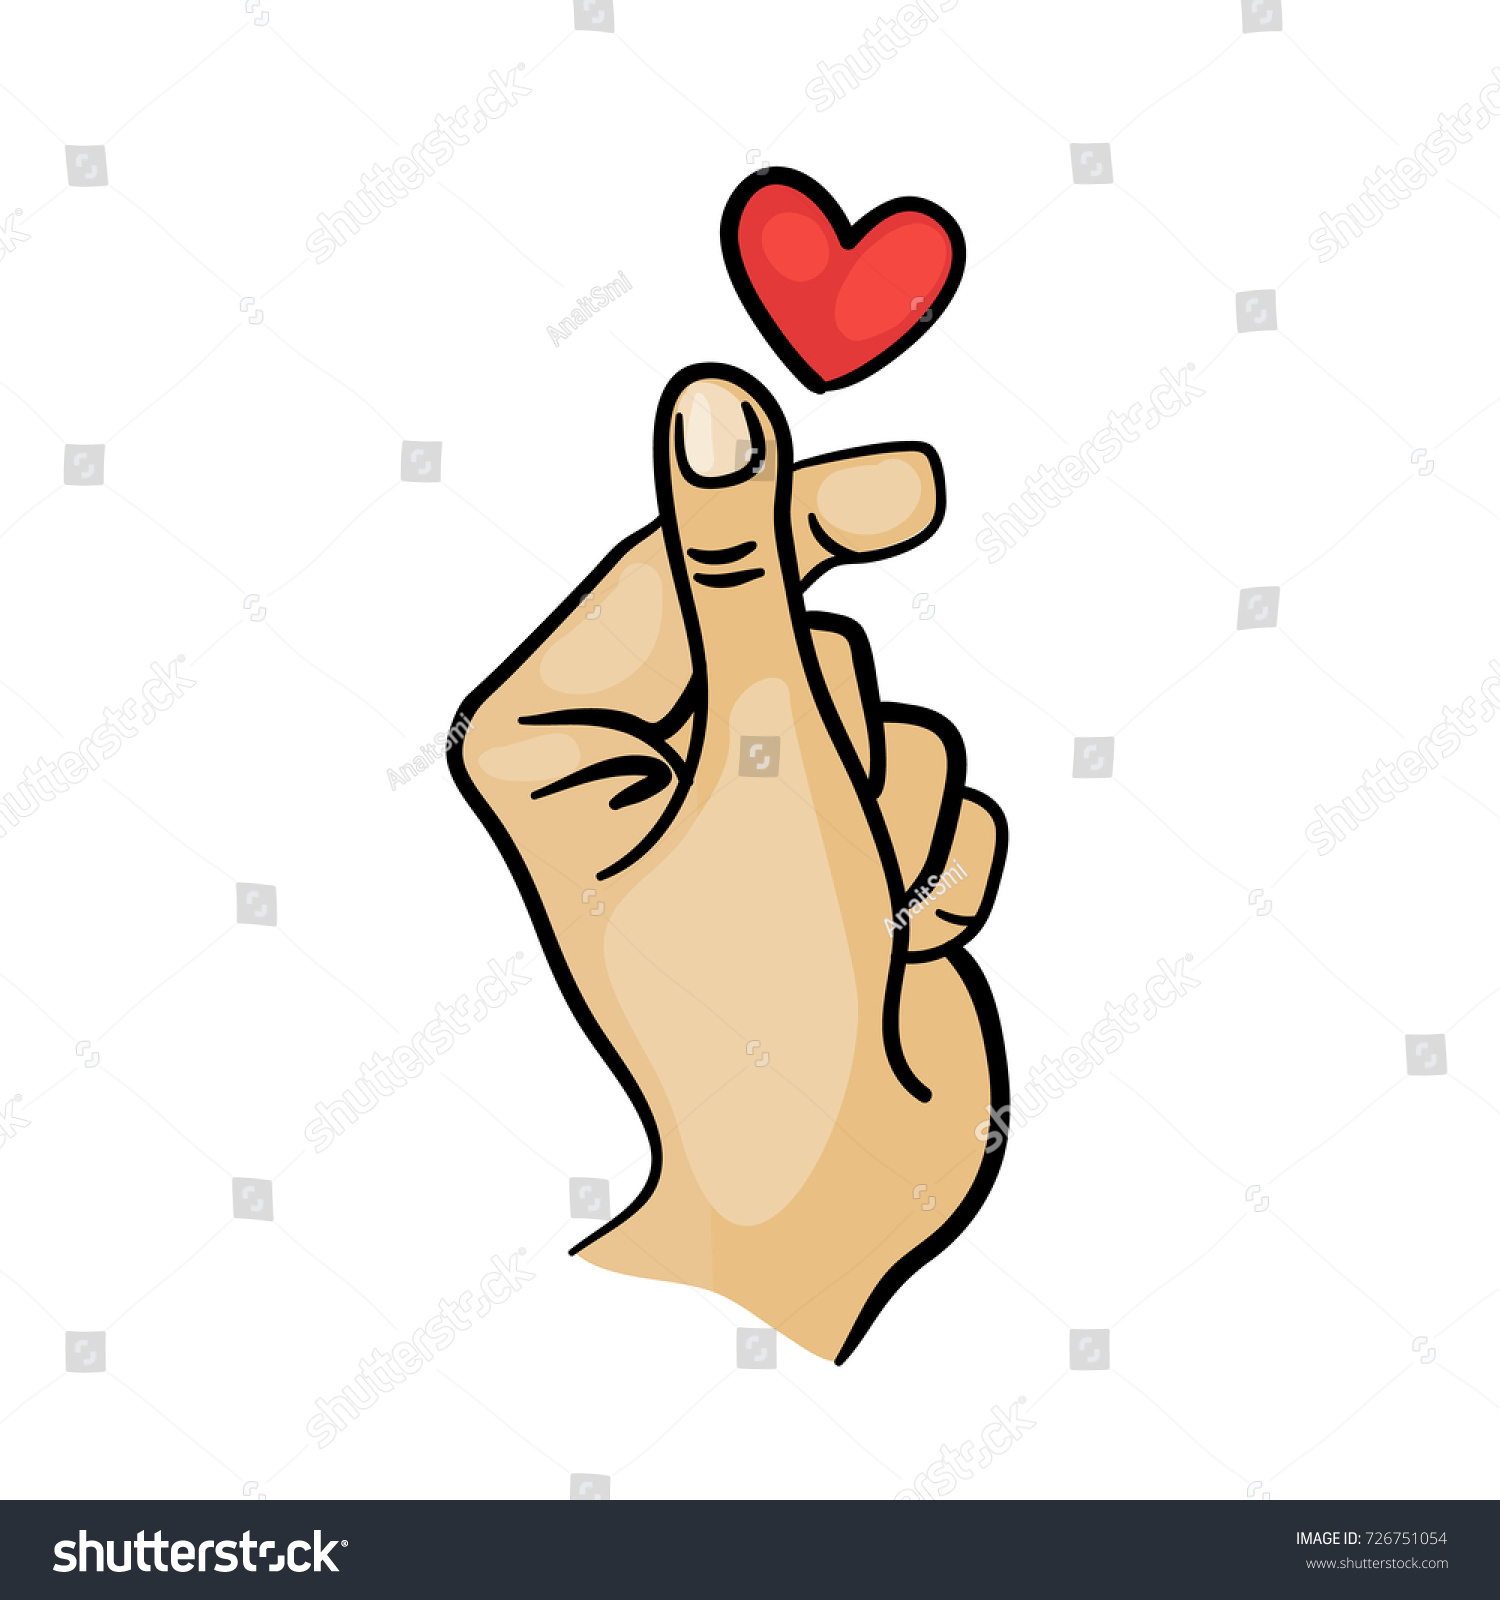 Korean Finger Heart Love You Hangul のベクター画像素材 ロイヤリティフリー